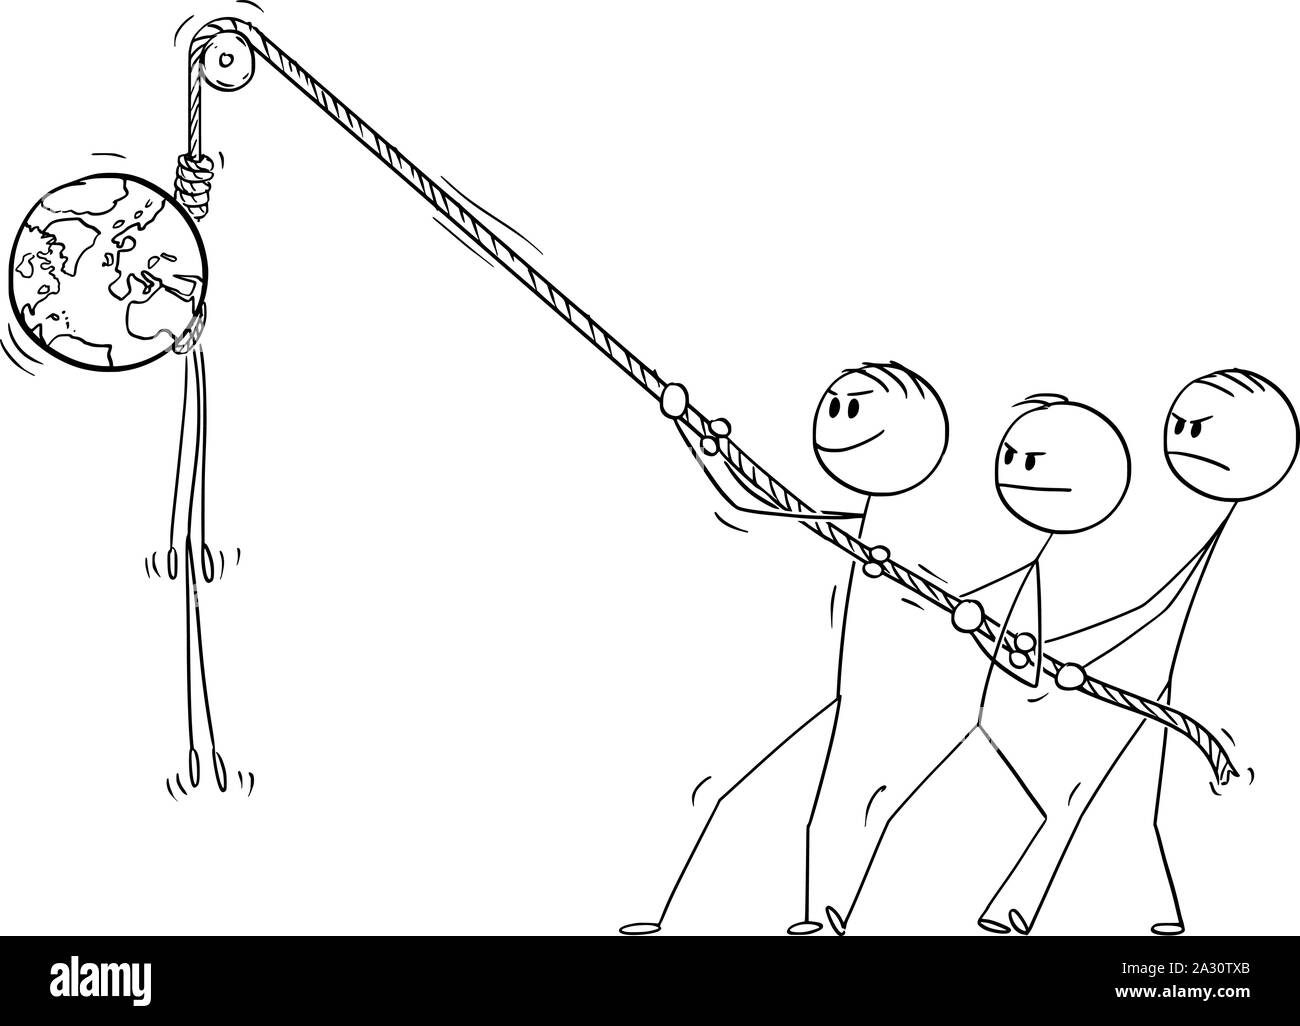 Vector cartoon stick figura disegno illustrazione concettuale di persone appendere il pianeta Terra impiccato sulla corda. La morte del mondo e salvaguardia ambientale concetto. Illustrazione Vettoriale